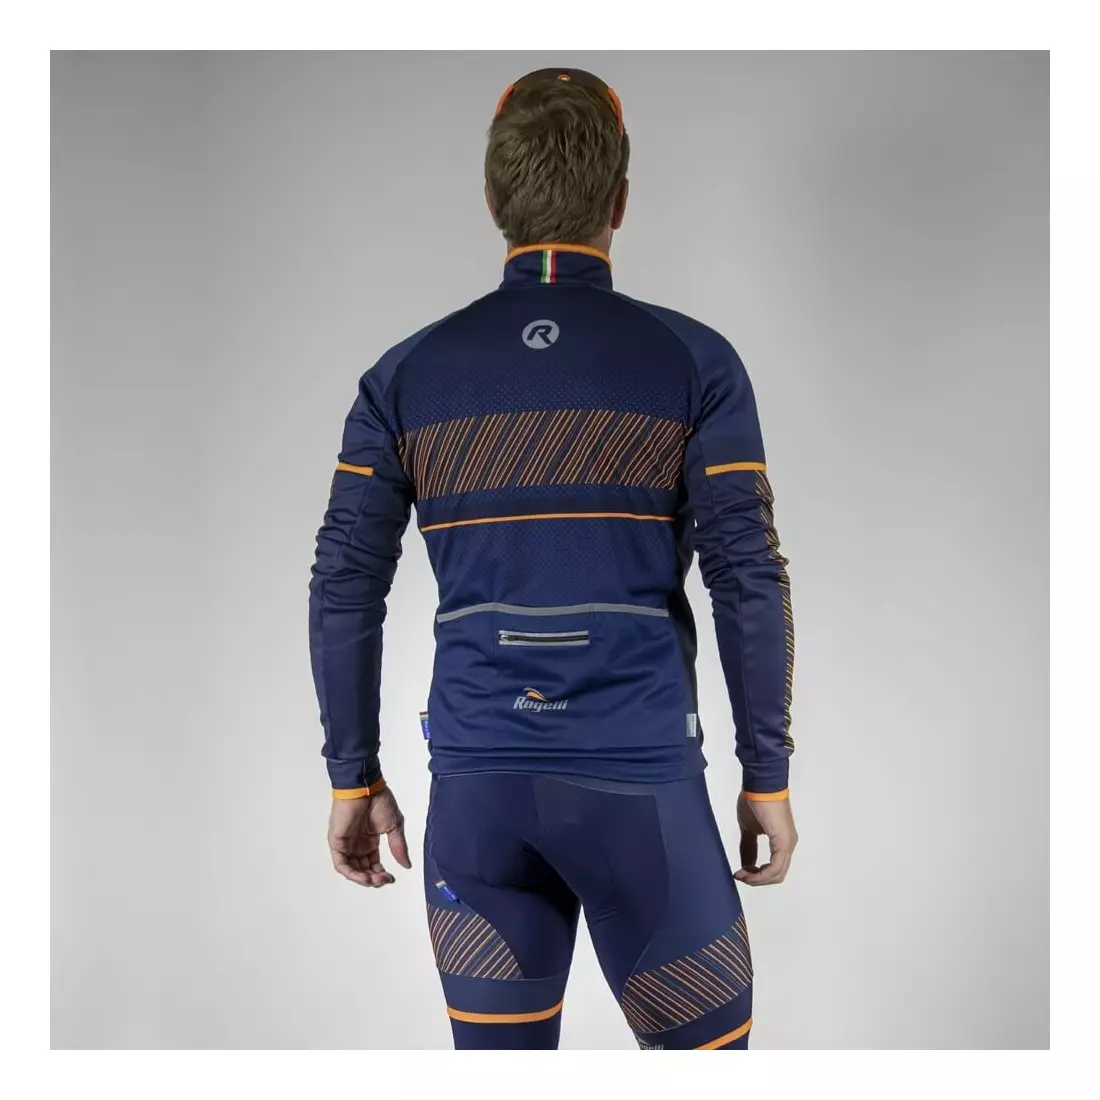 ROGELLI RITMO lehce izolovaná cyklistická bunda, námořnická modř-fluo oranžová